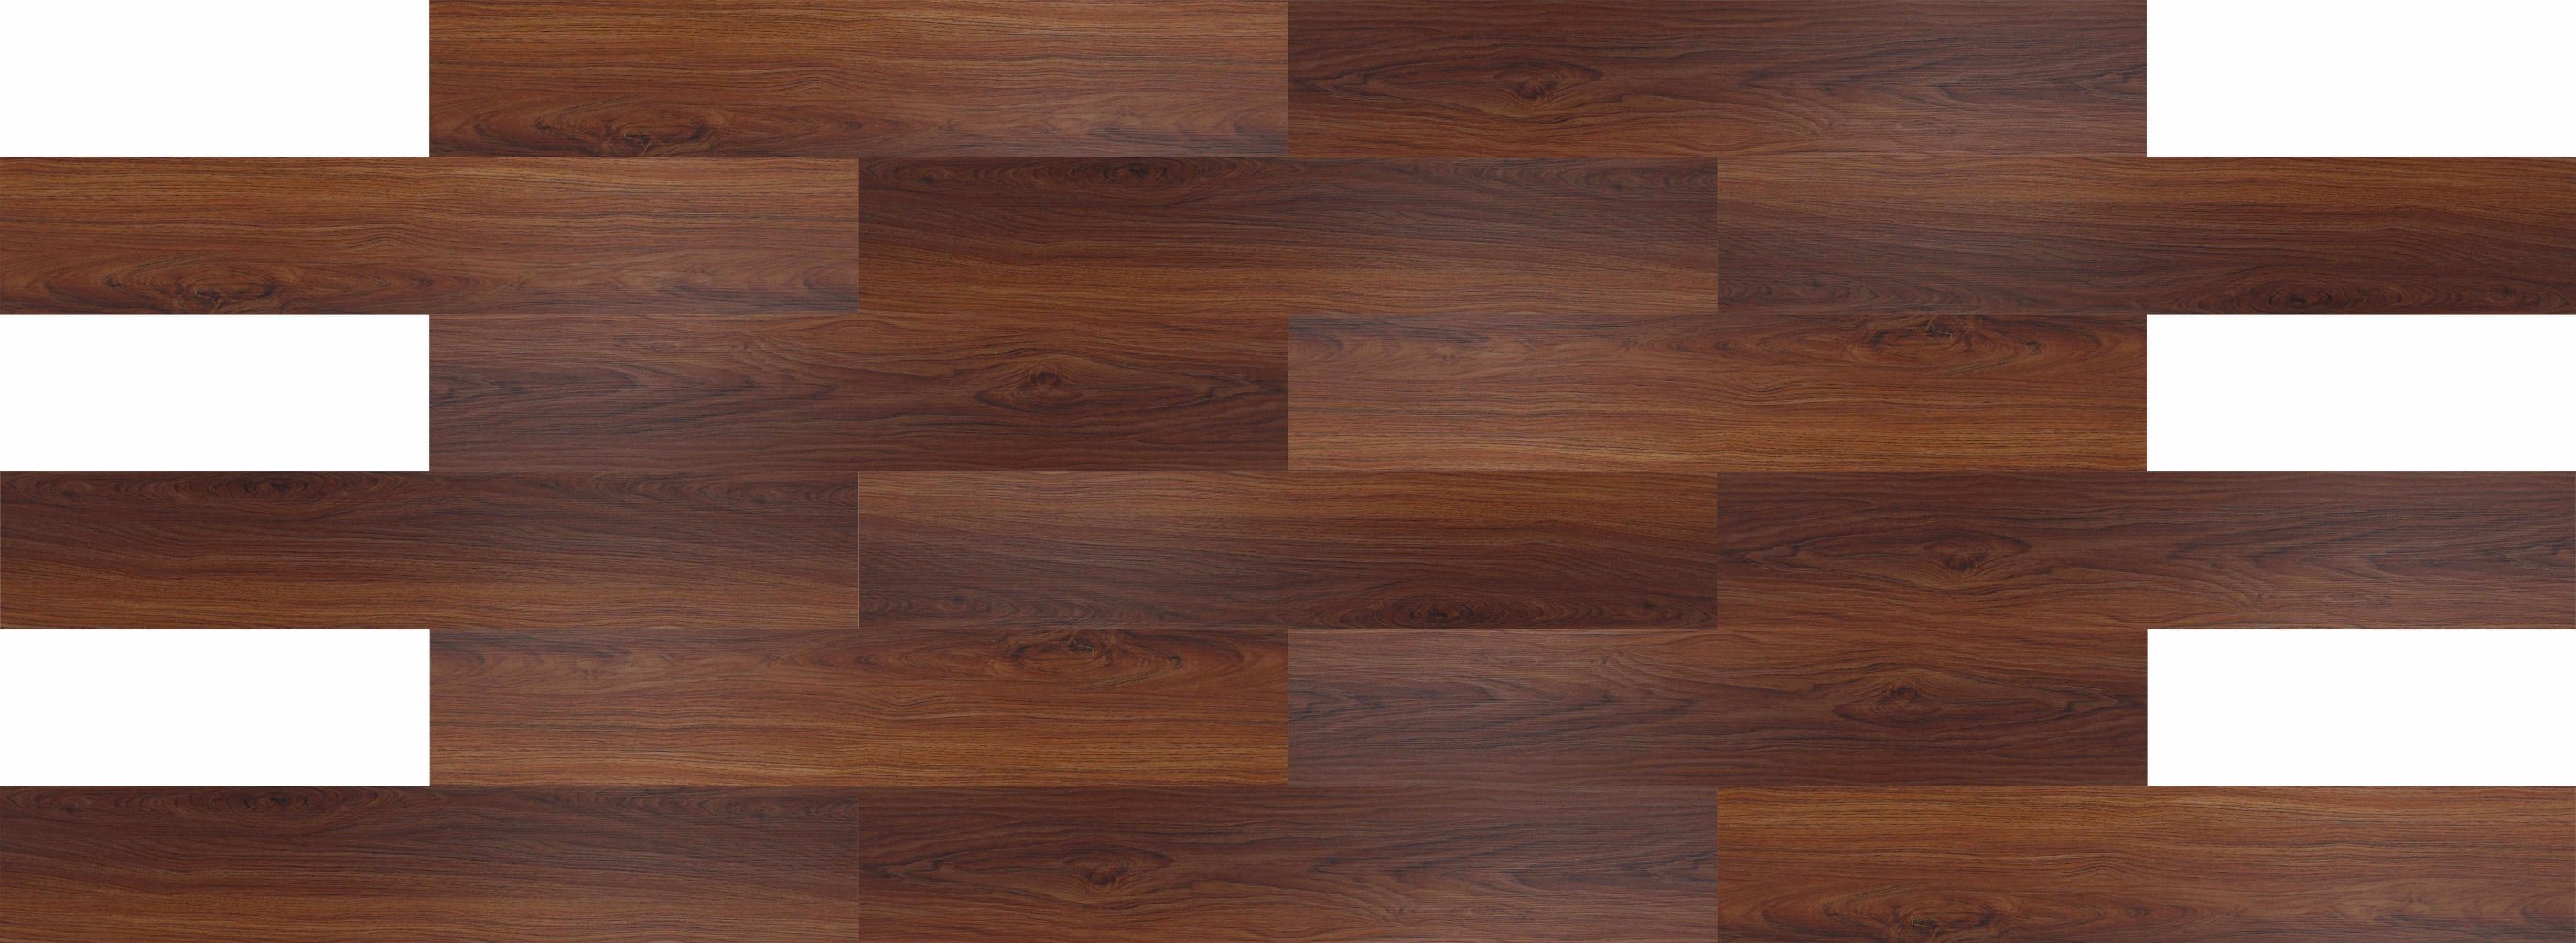 PVC Floor Tile High Quality